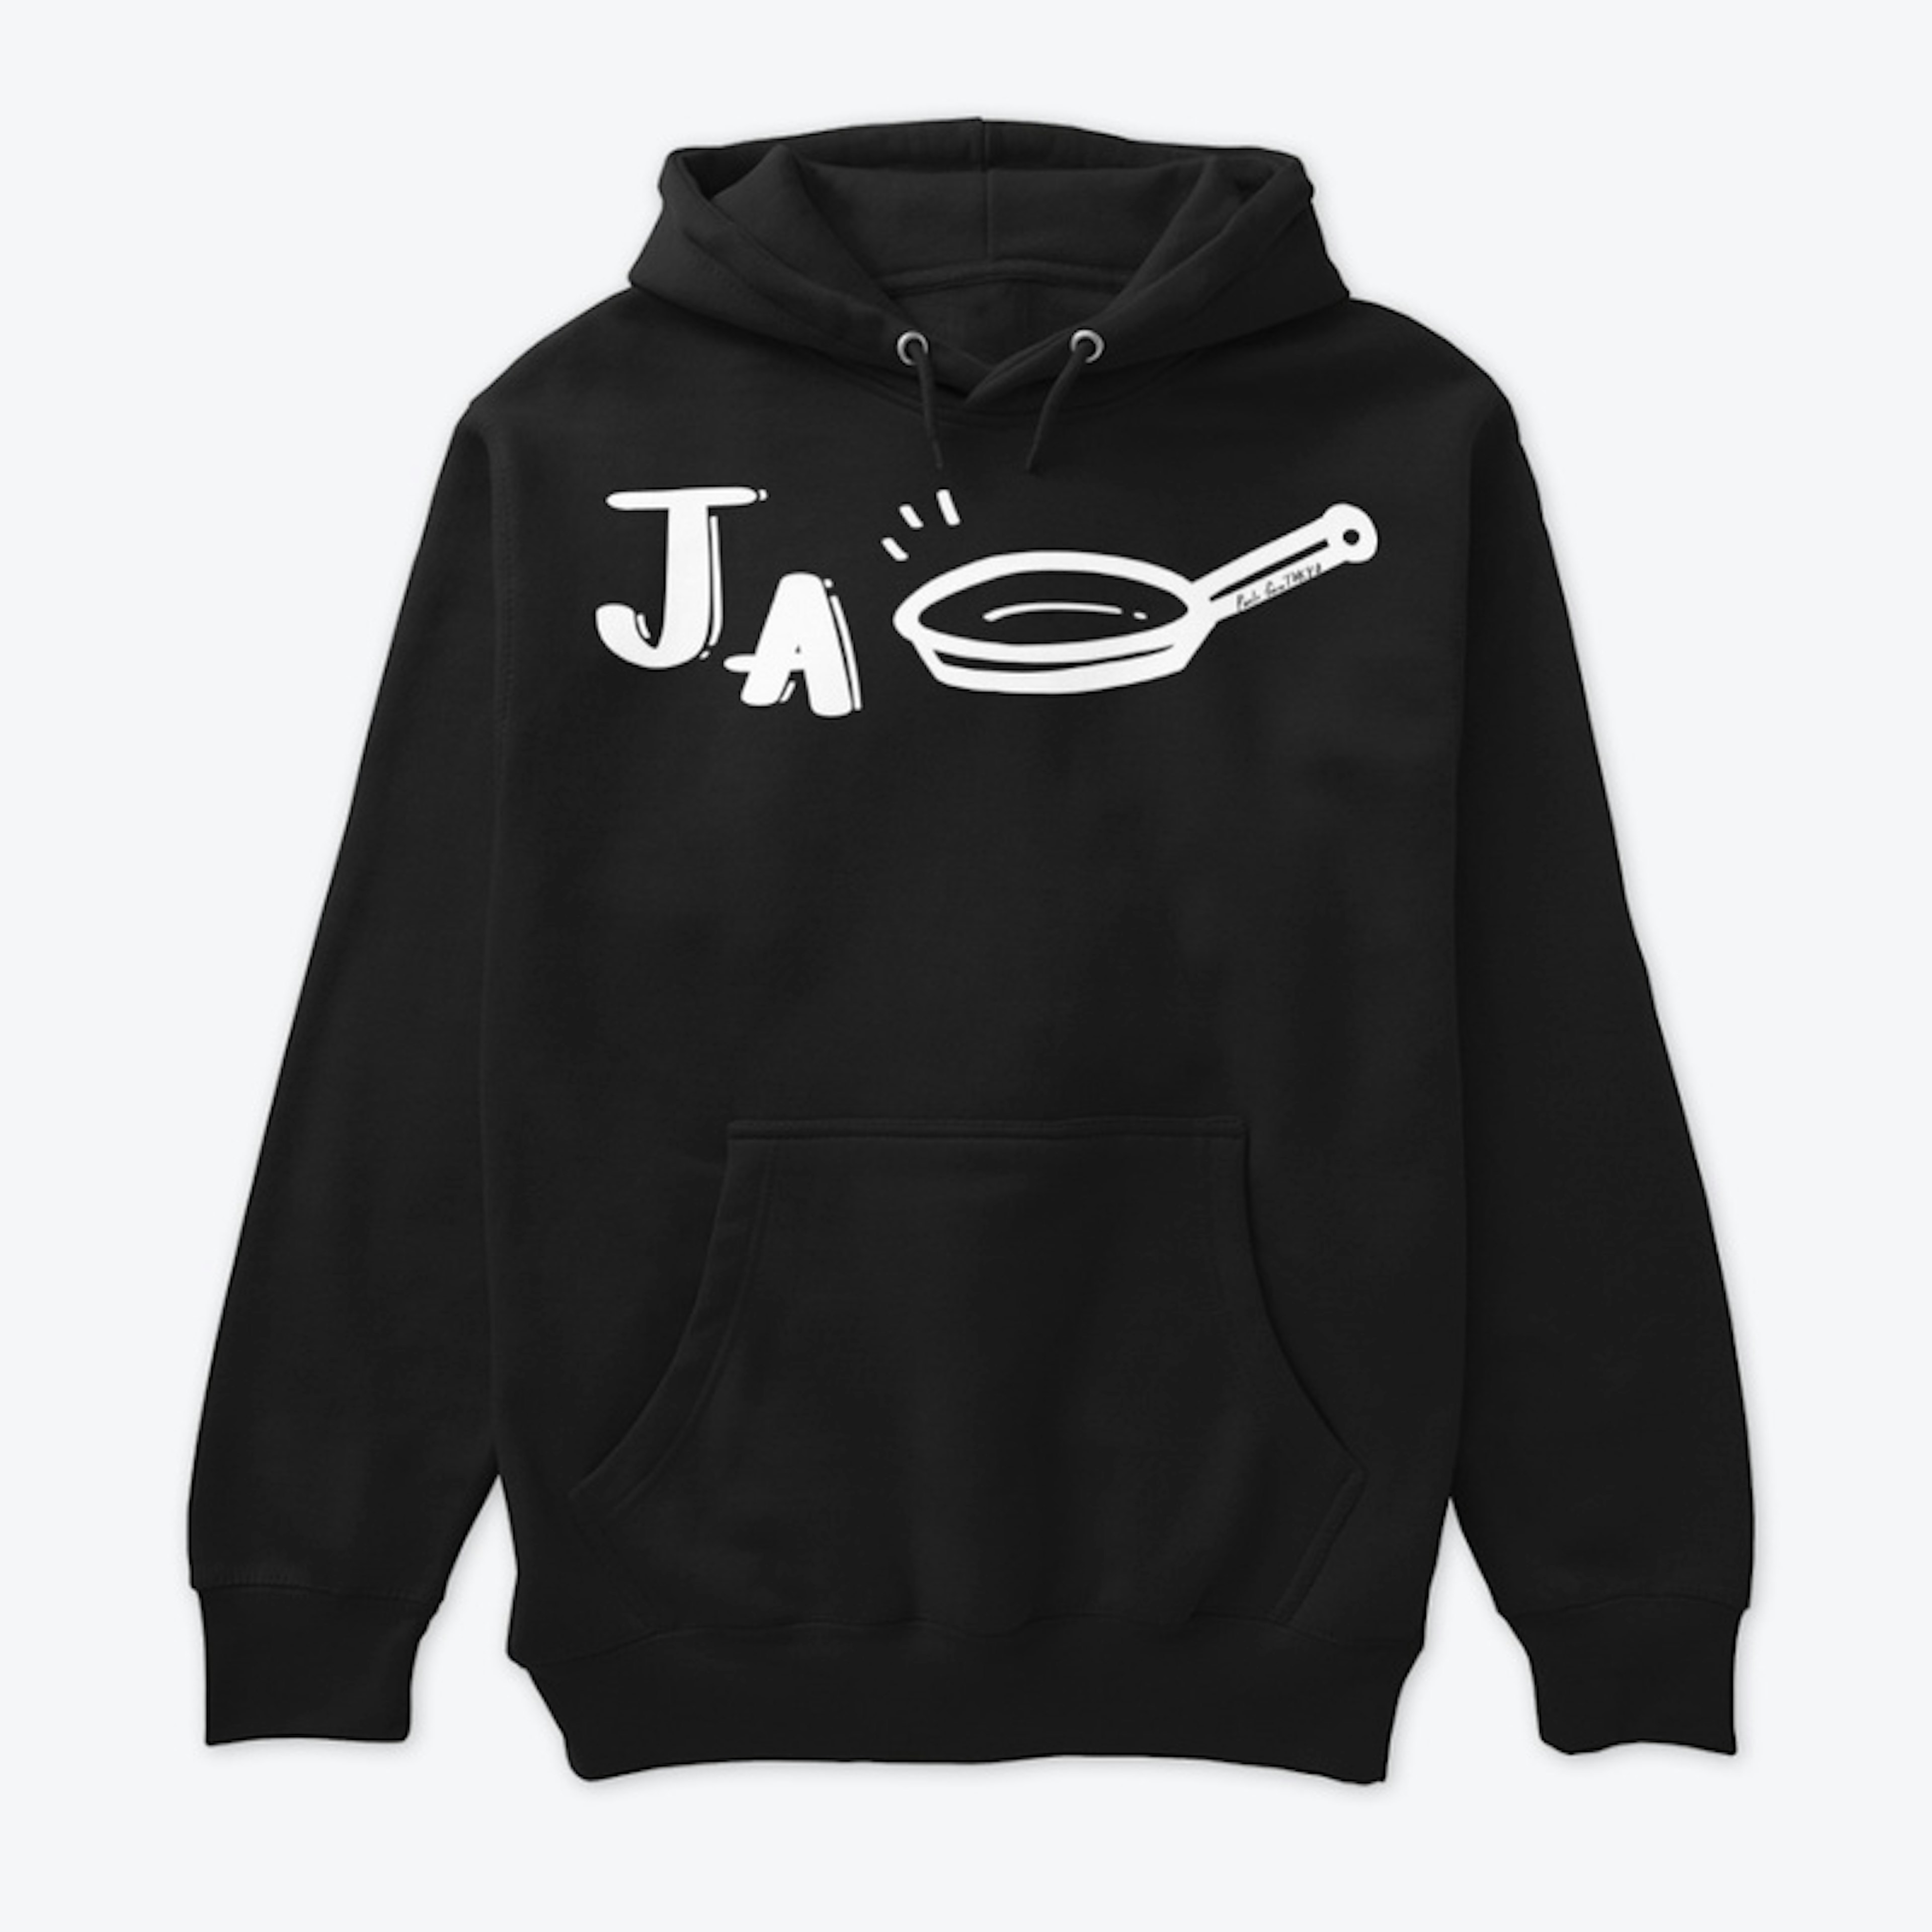 Ja-Pan (Japan) White Design